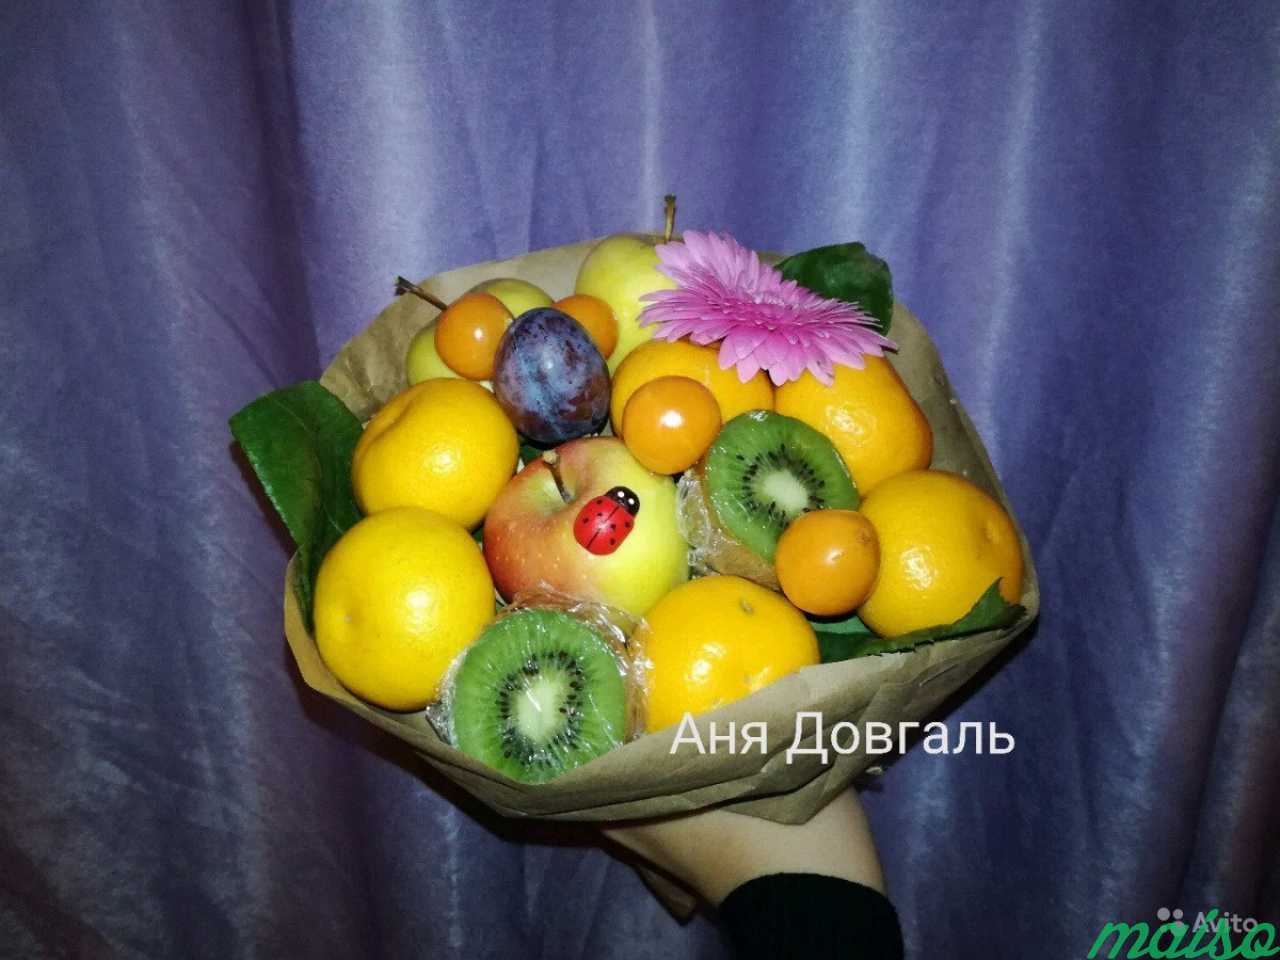 Букеты из фруктов Подарки на 14 февраля в Санкт-Петербурге. Фото 5